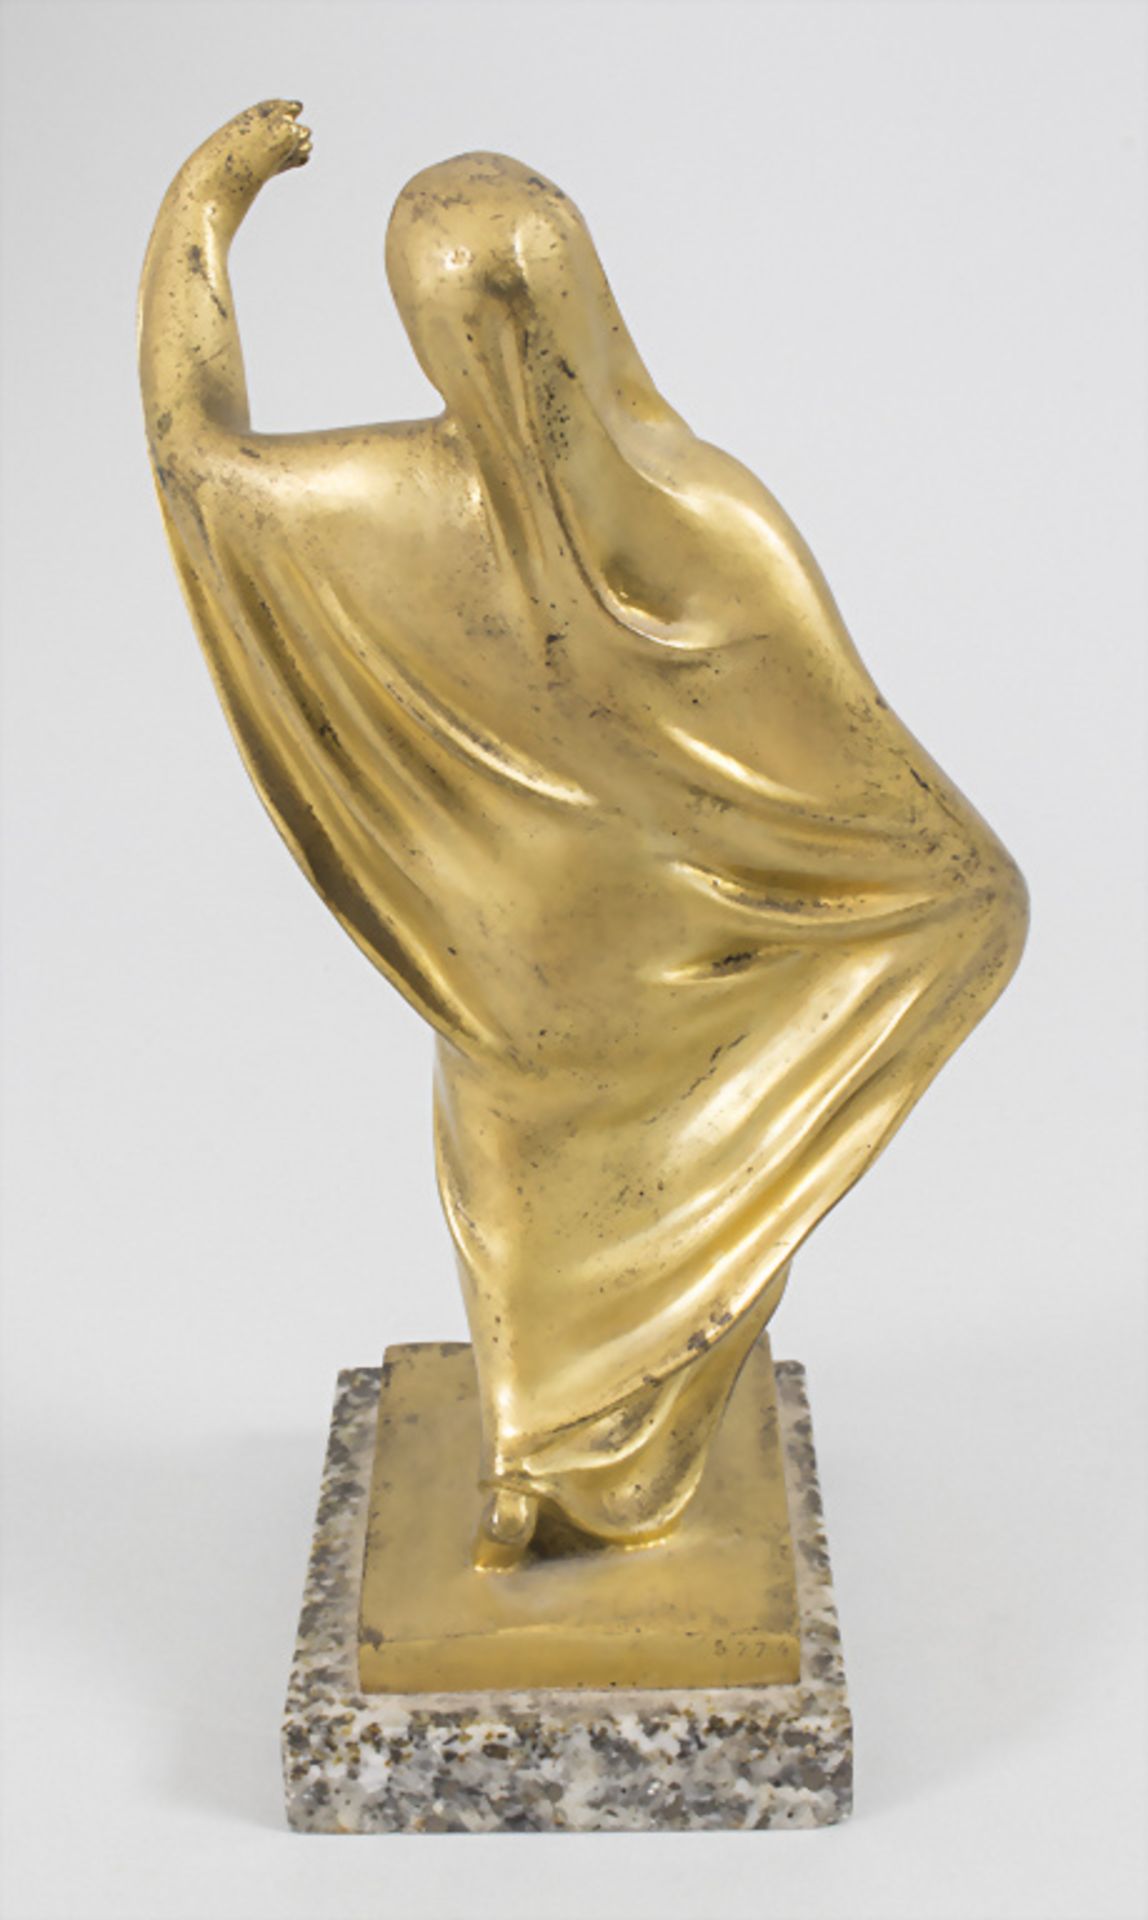 Jugendstil Bronze 'Tanagra Skulptur' / Tanagra sculpture en bronze à patine dorée / An Art ... - Image 3 of 7